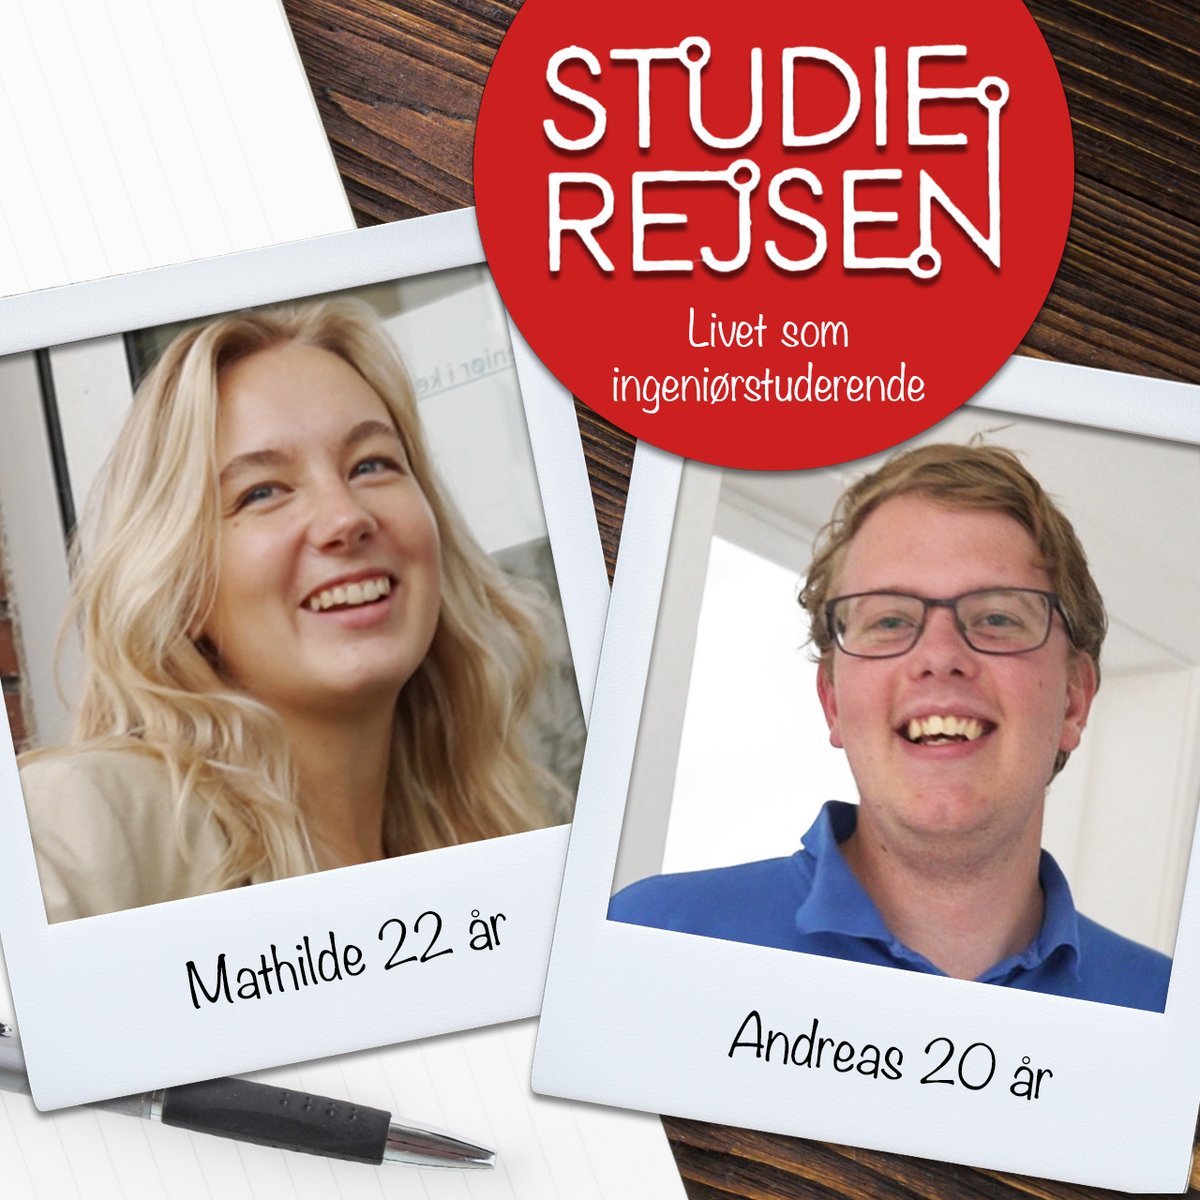 Studierejsen er en dokumentarserie, der i denne sæson følger Mathilde og Andreas og deres liv som nye ingeniørstuderende på Aarhus Universitet.